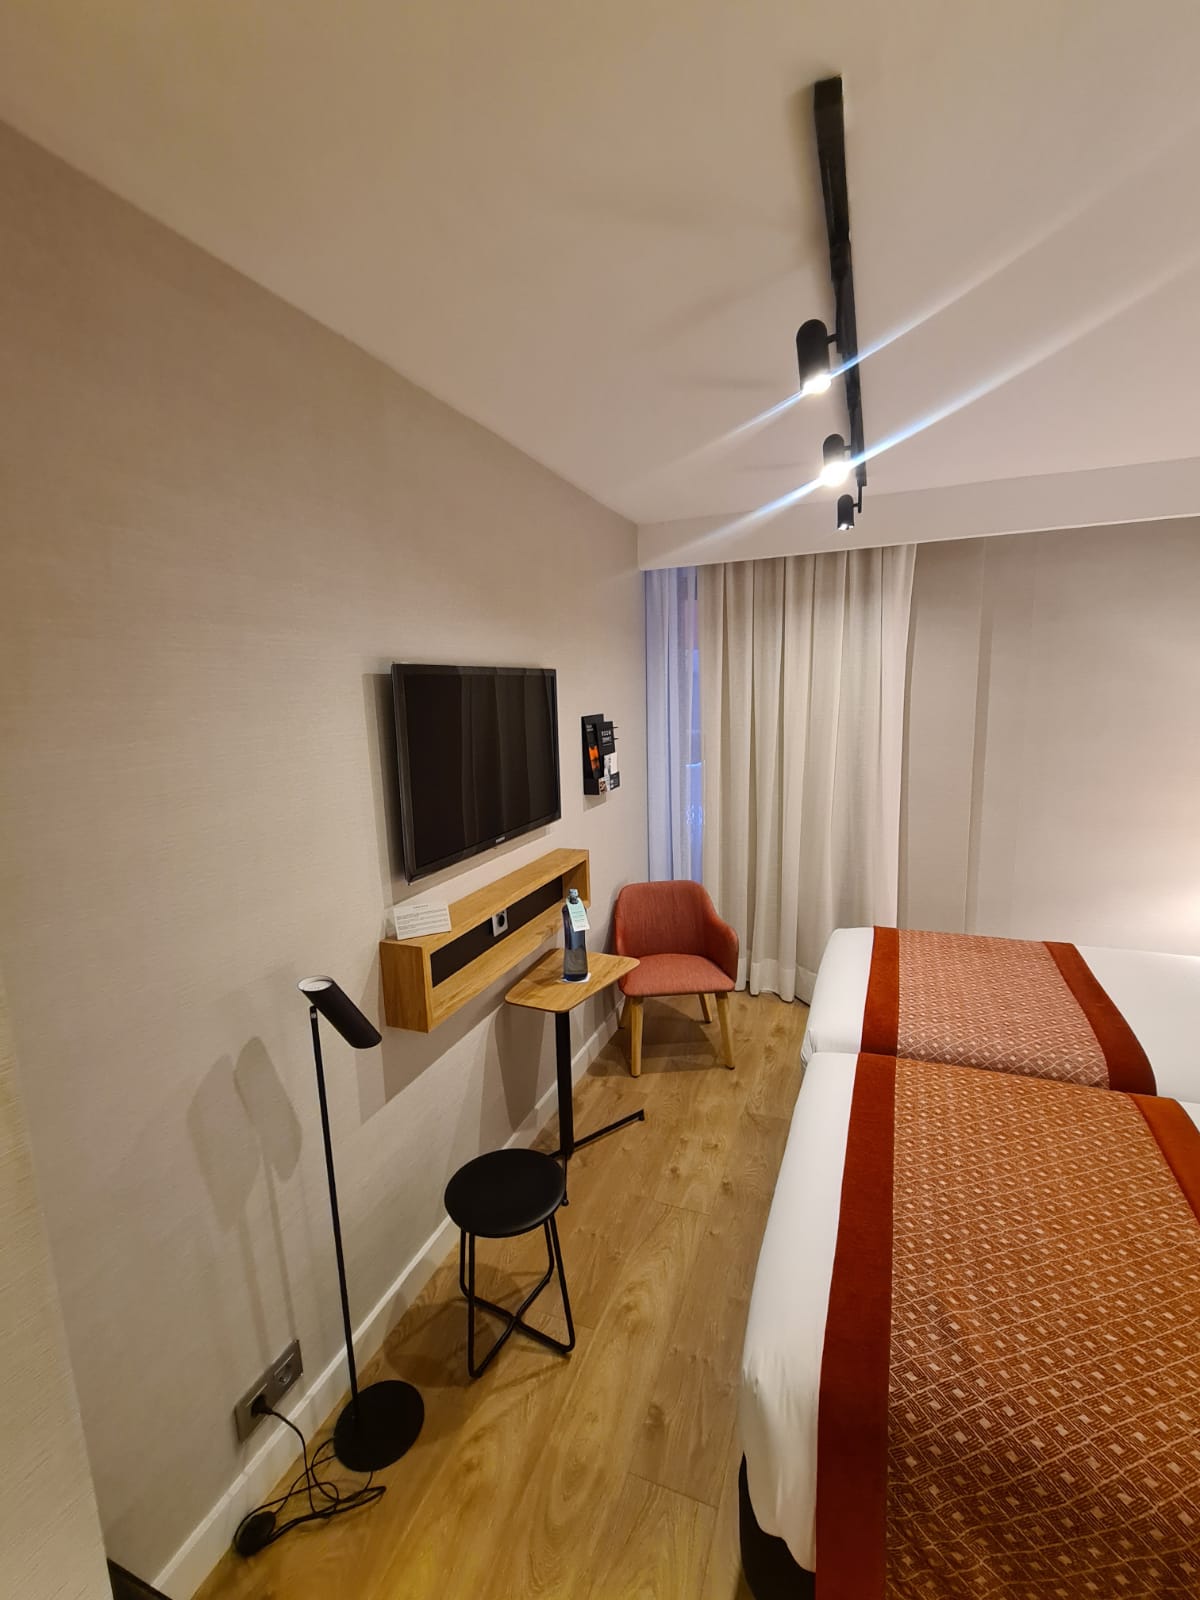 Instalación eléctrica y de climatización en hotel, Barcelona